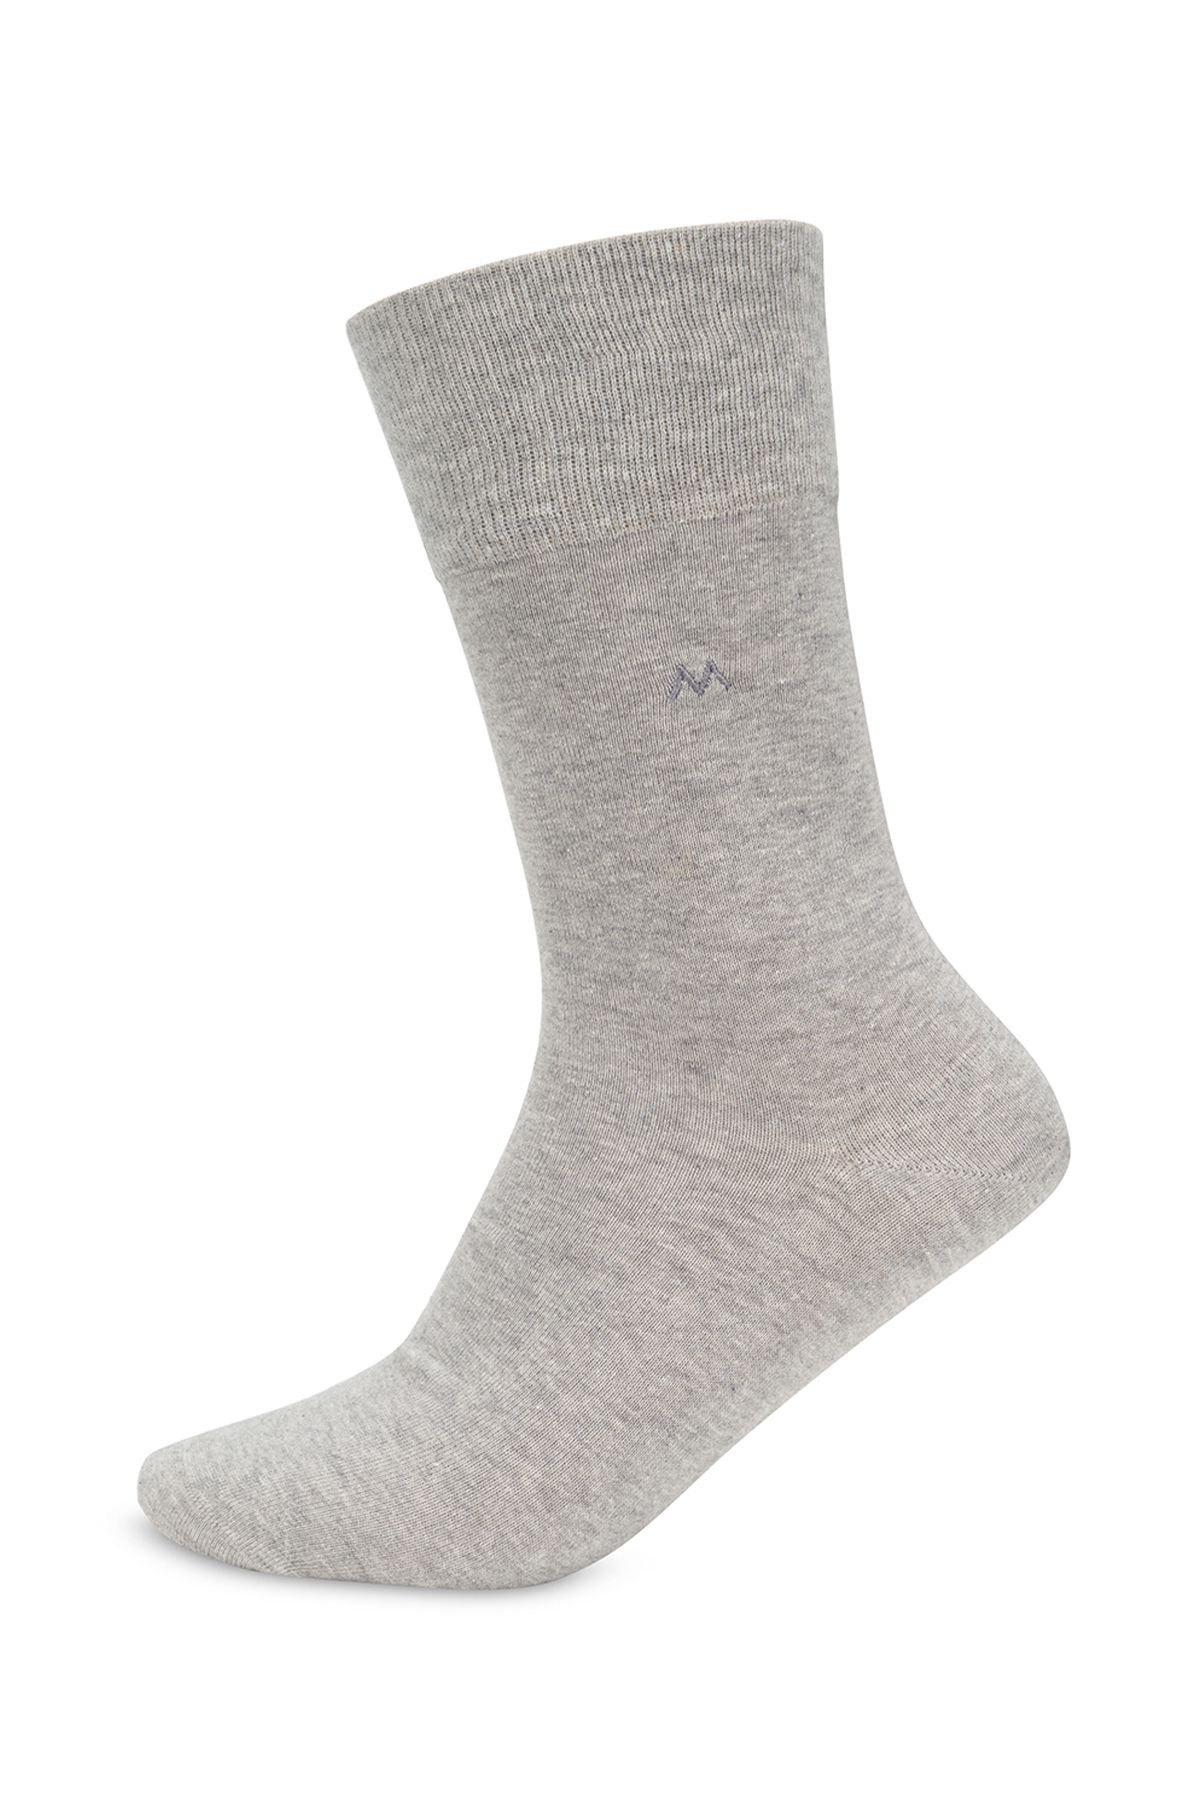 Hemington Pamuklu Açık Gri Çorap